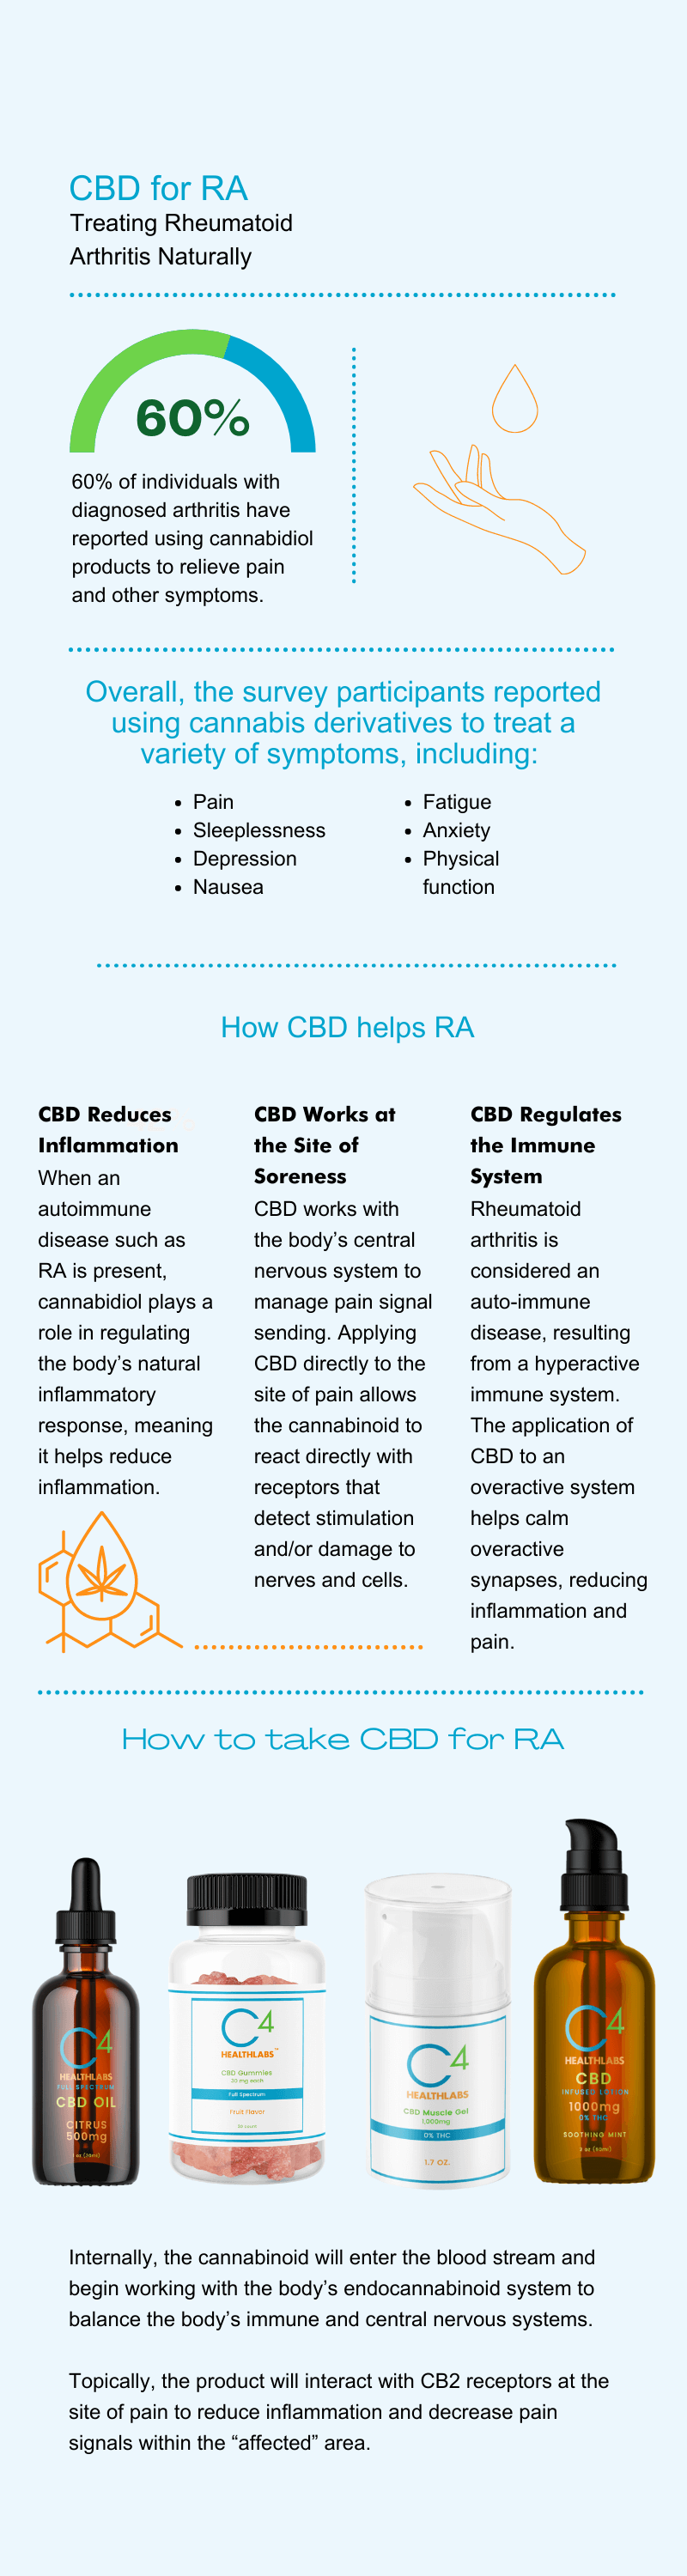 CBD for RA infogarphic by C4 Healthlabs